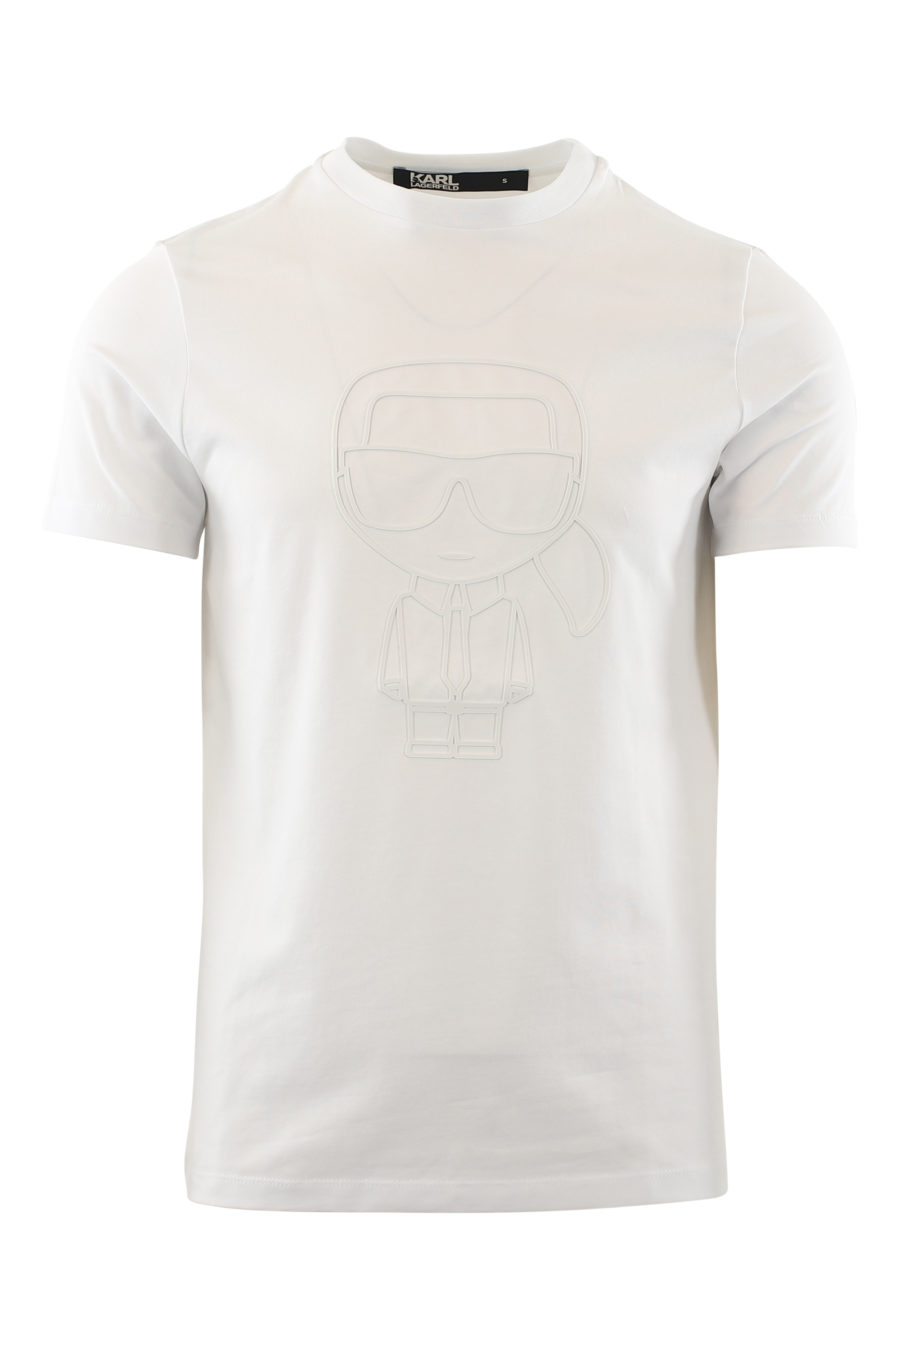 Camiseta blanca con logo de goma blanco - IMG 6525